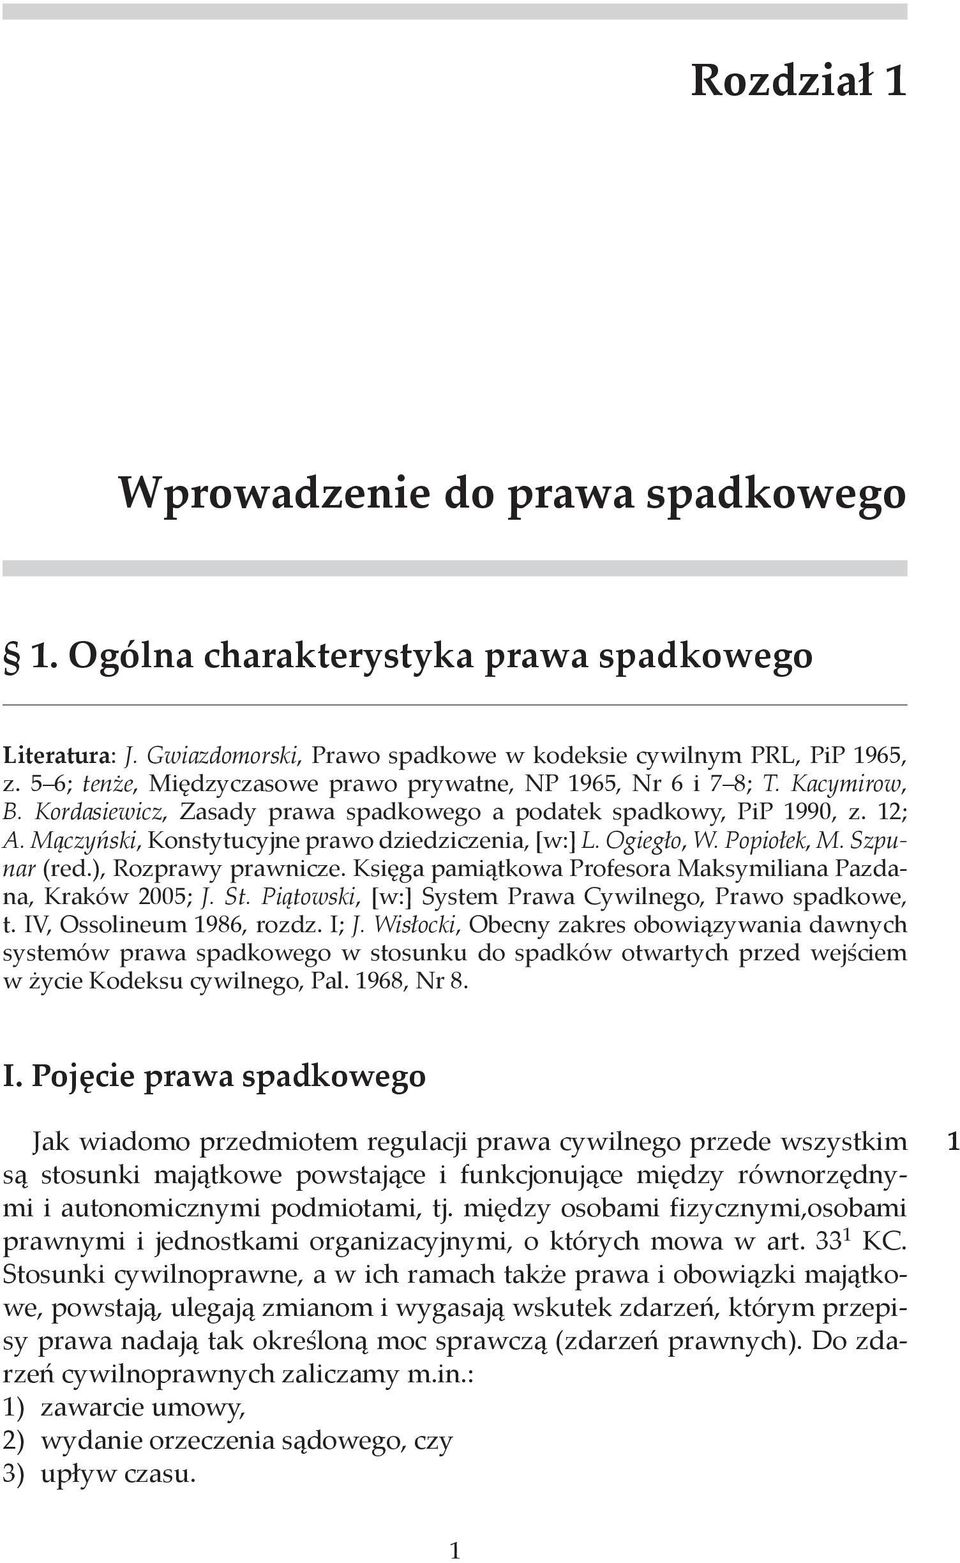 Mączyński, Konstytucyjne prawo dziedziczenia, [w:] L. Ogiegło, W. Popiołek, M. Szpunar (red.), Rozprawy prawnicze. Księga pamiątkowa Profesora Maksymiliana Pazdana, Kraków 2005; J. St.